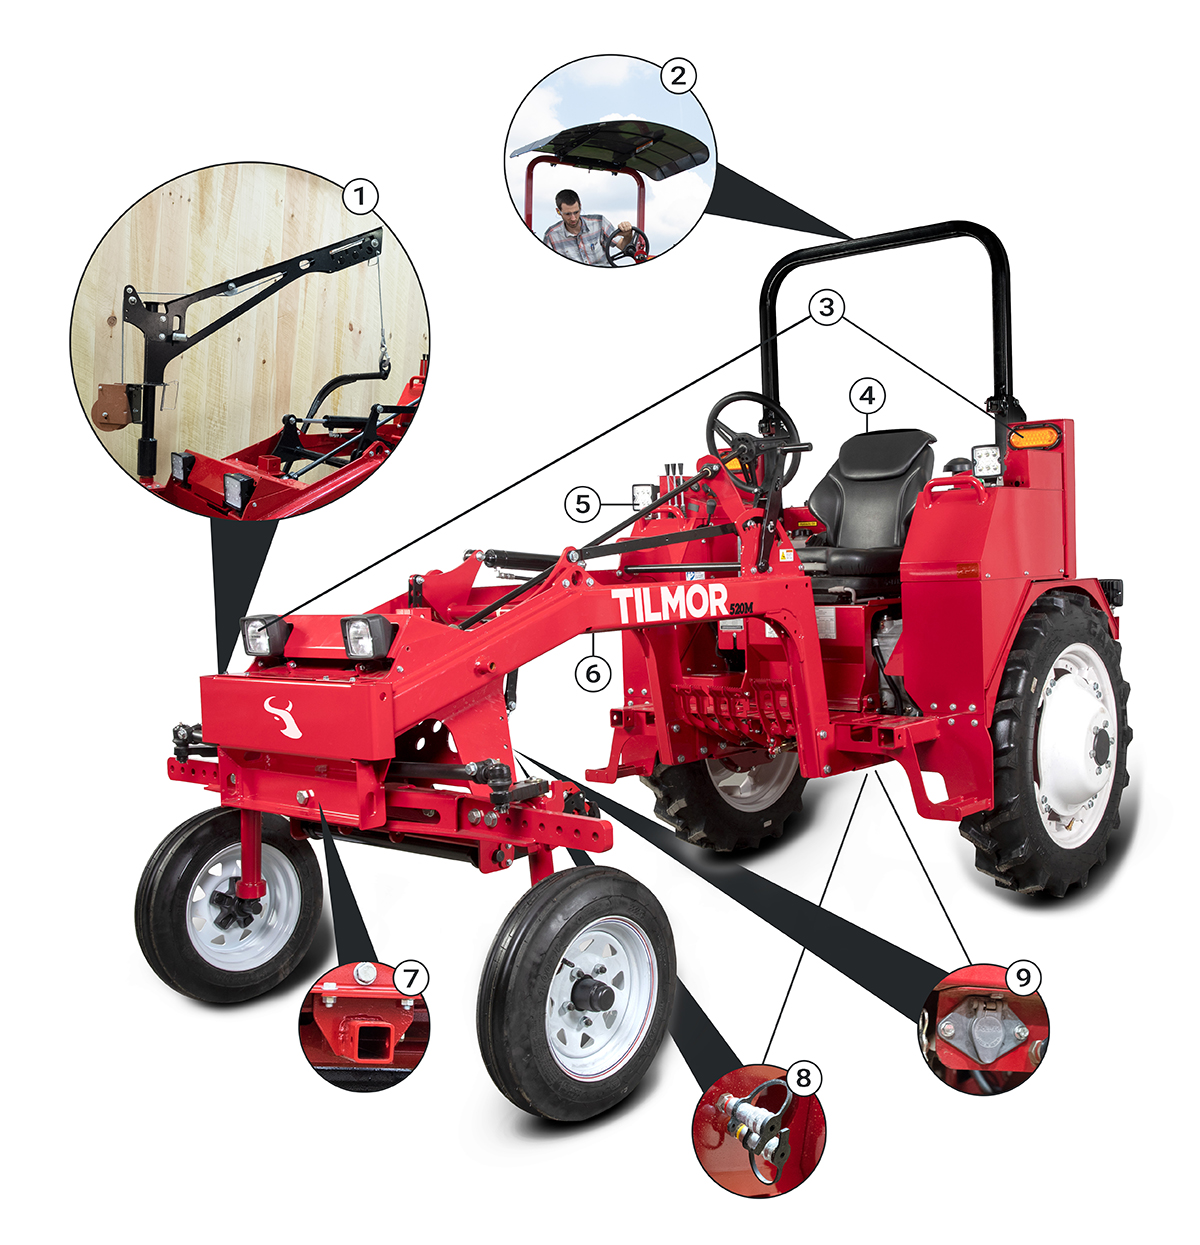 Tilmor 520 Tractor Features